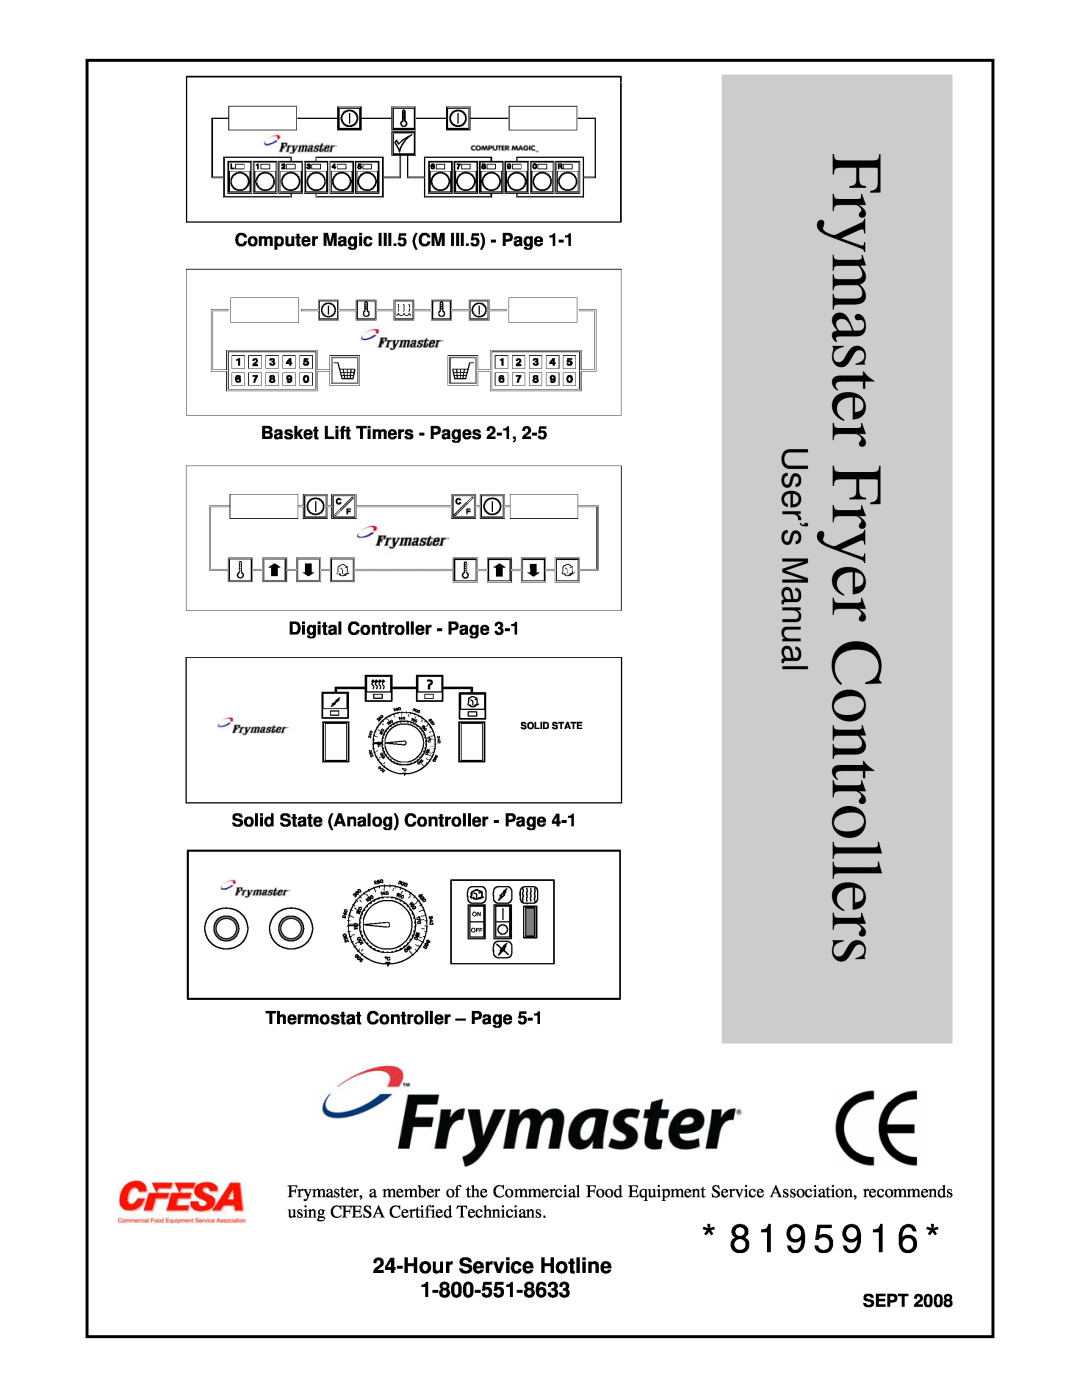 Frymaster 8195916 user manual Hour Service Hotline, Frymaster Fryer Controllers, Digital Controller - Page, Sept, On Off 